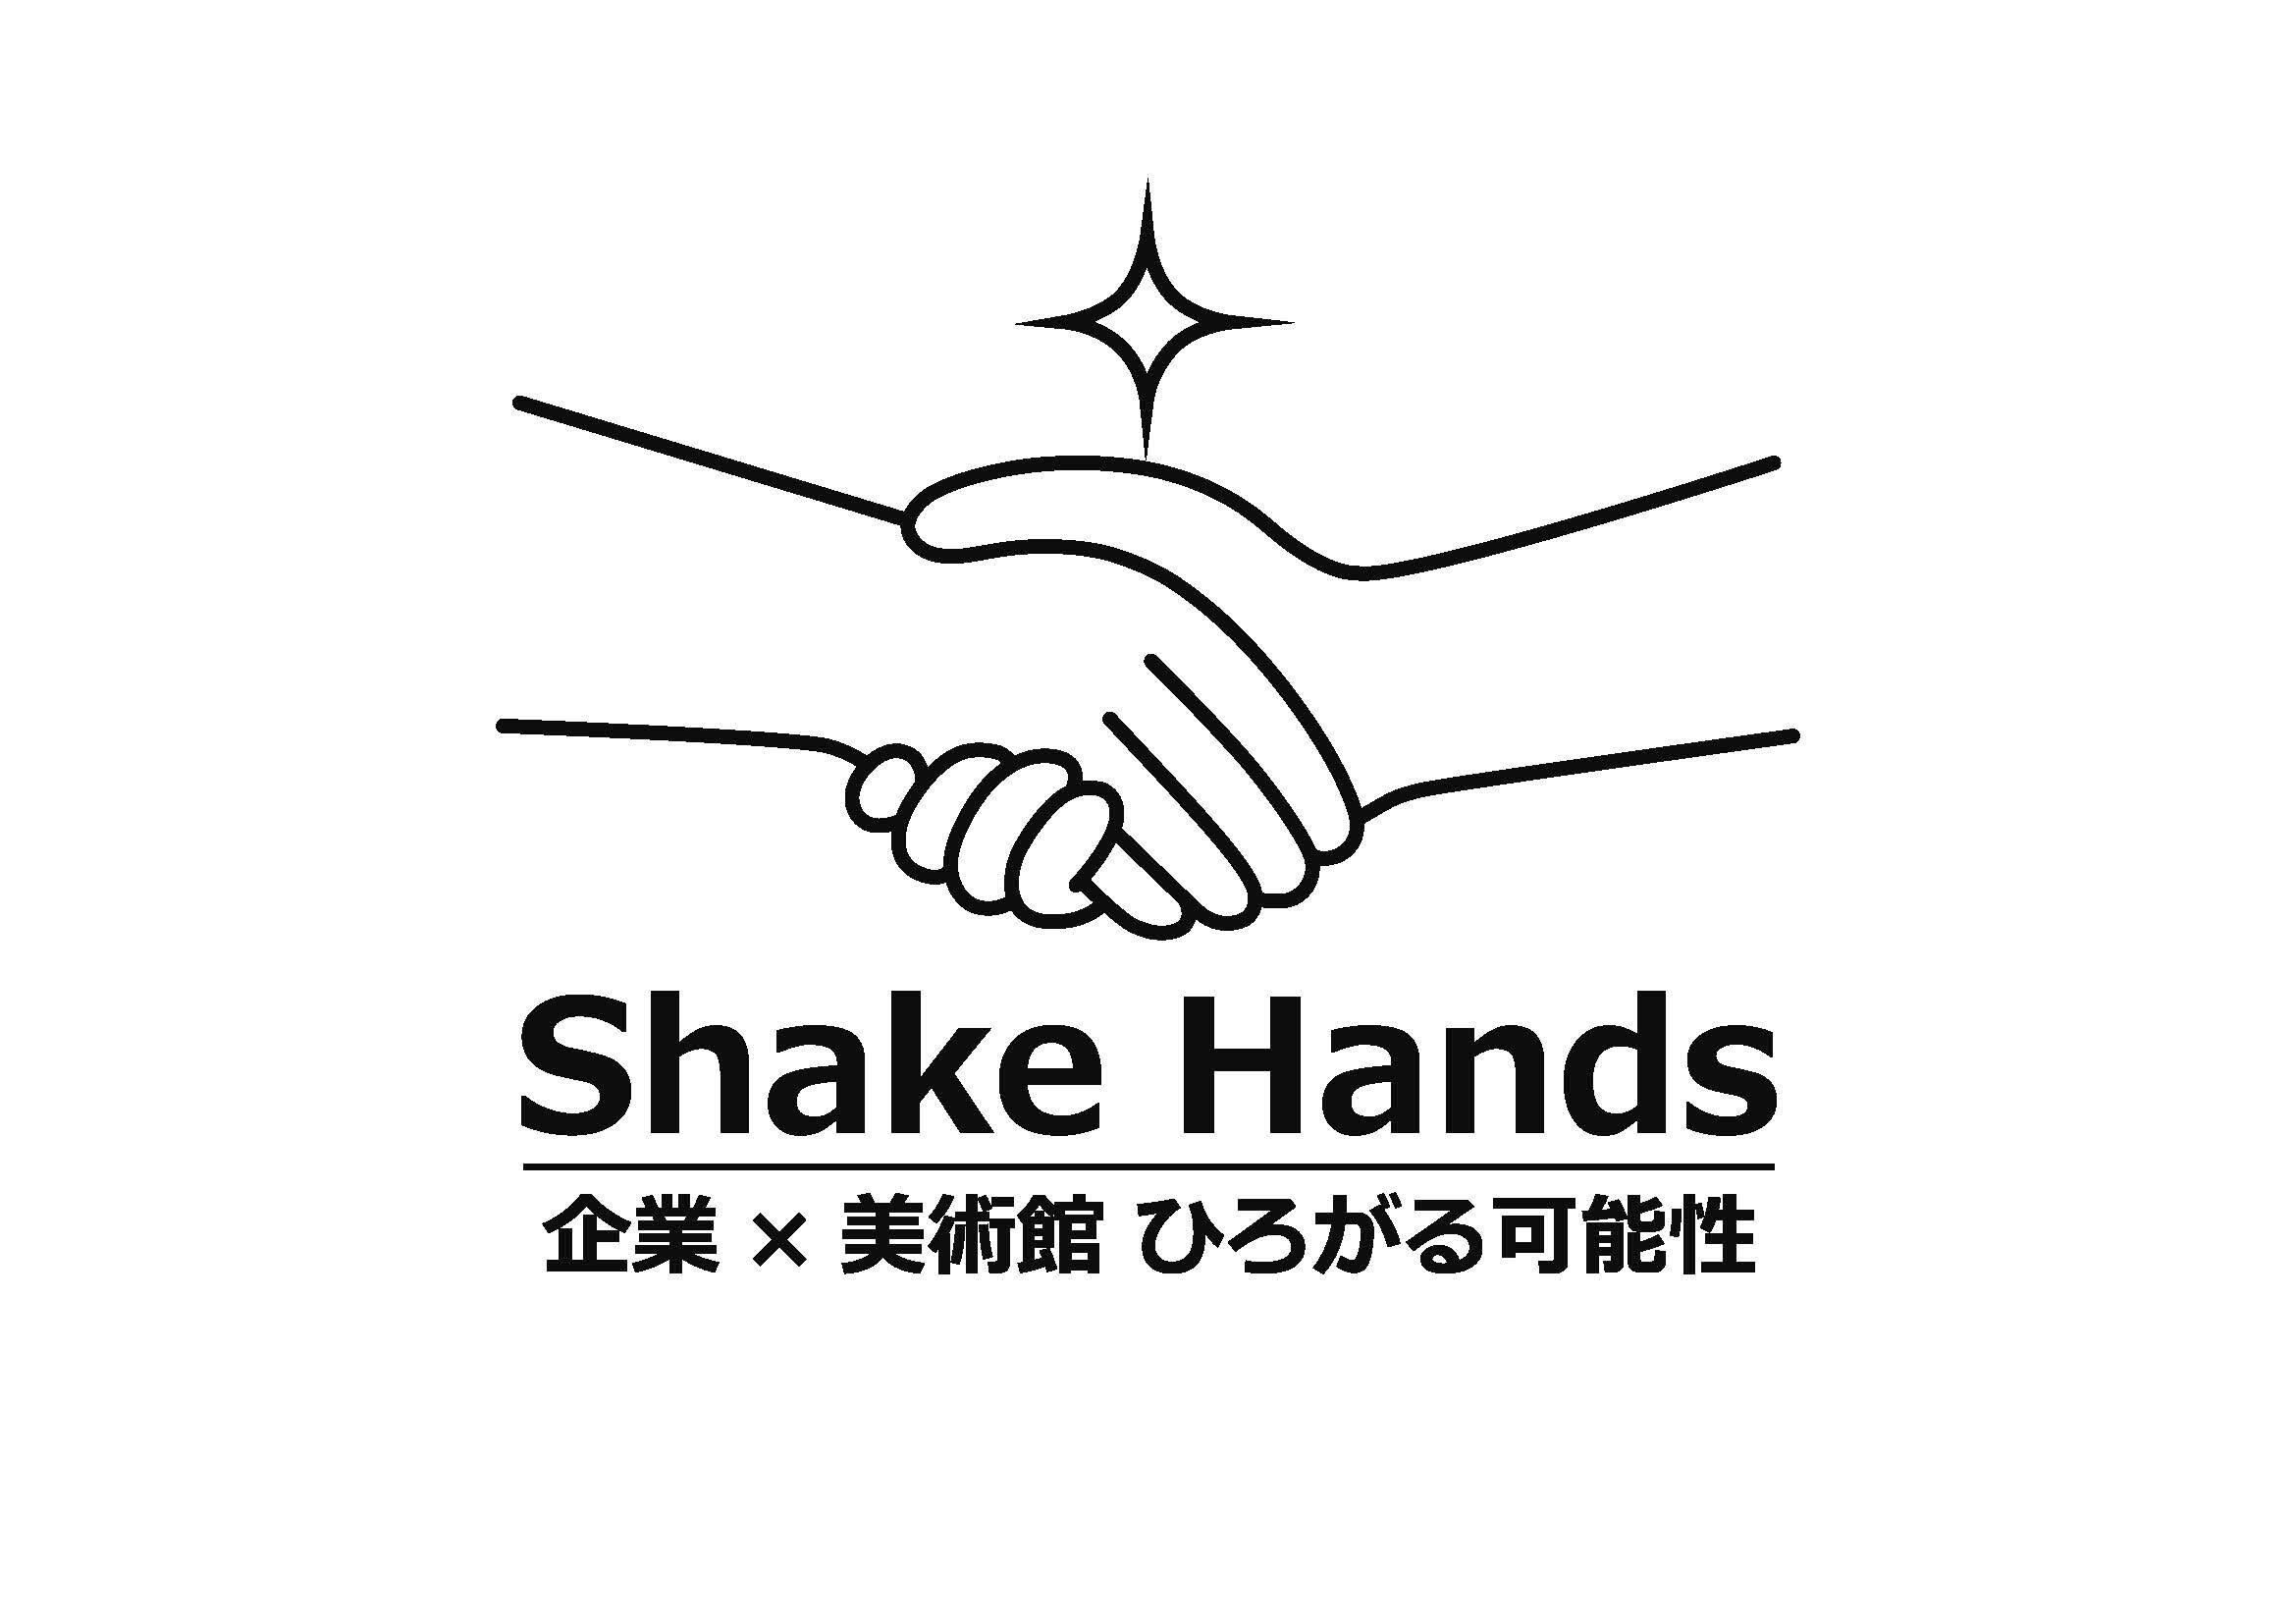 社会連携事例紹介動画「Shake Hands 企業×美術館 ひろがる可能性」
